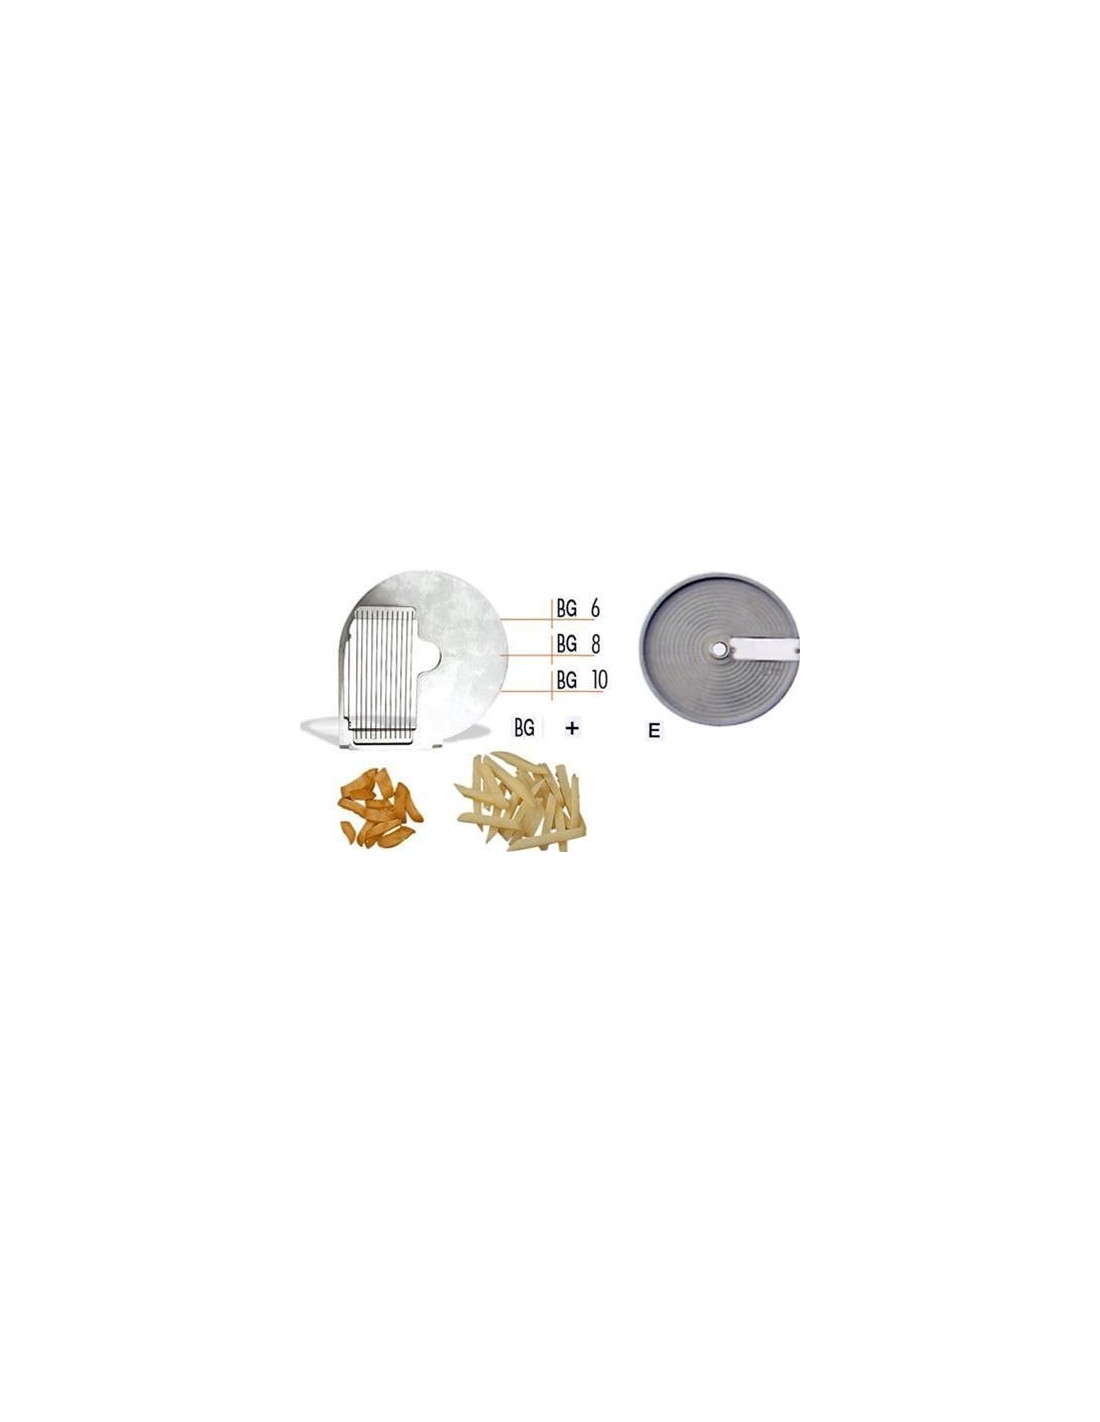 Disco tagliaverdura - per modello chef 600 - 800 - per BASTONCINI - da usare con disco mod. E - Taglio spessore mm 10